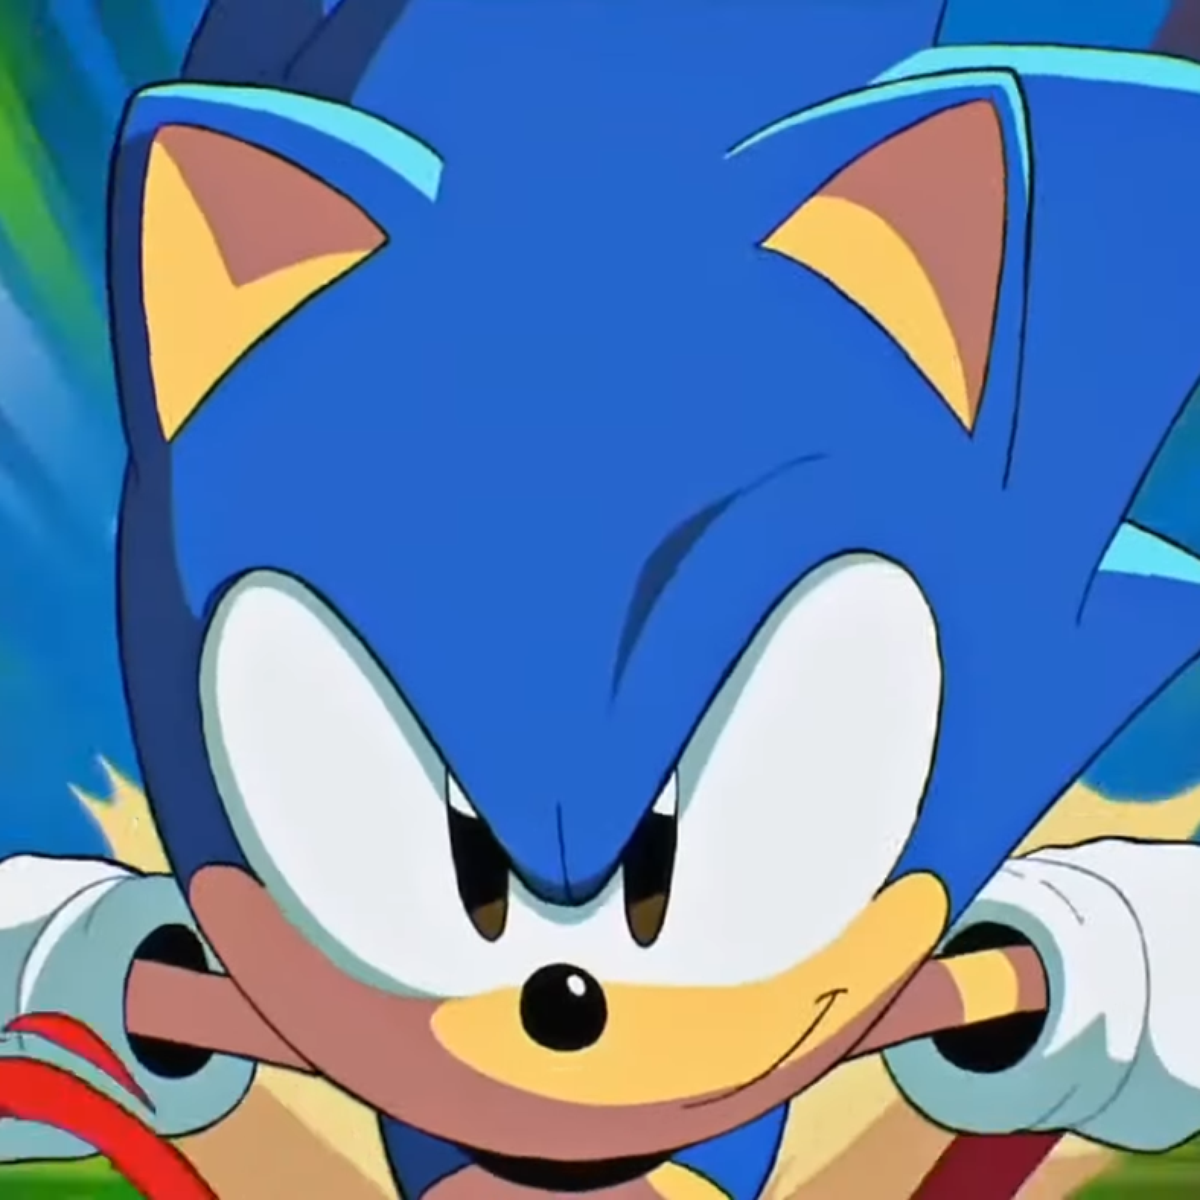 Todo Dia o Sonic se transformando com alguma música diferente